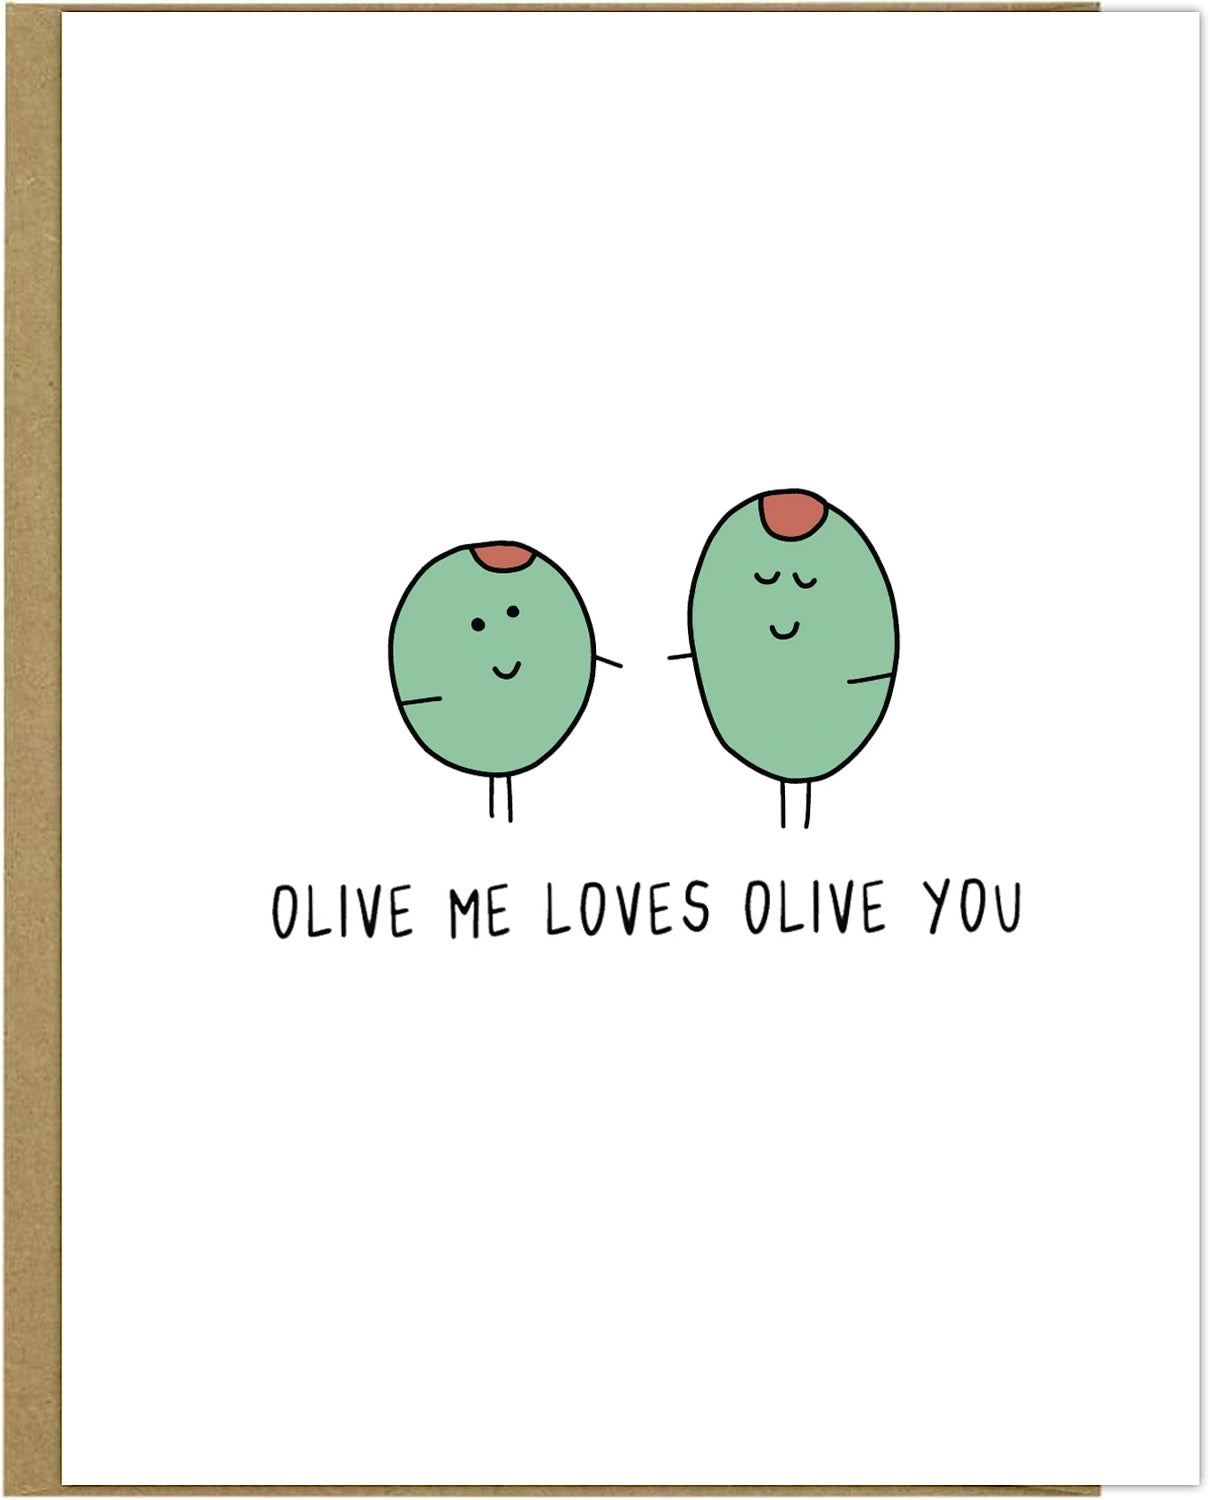 Olive Me Card